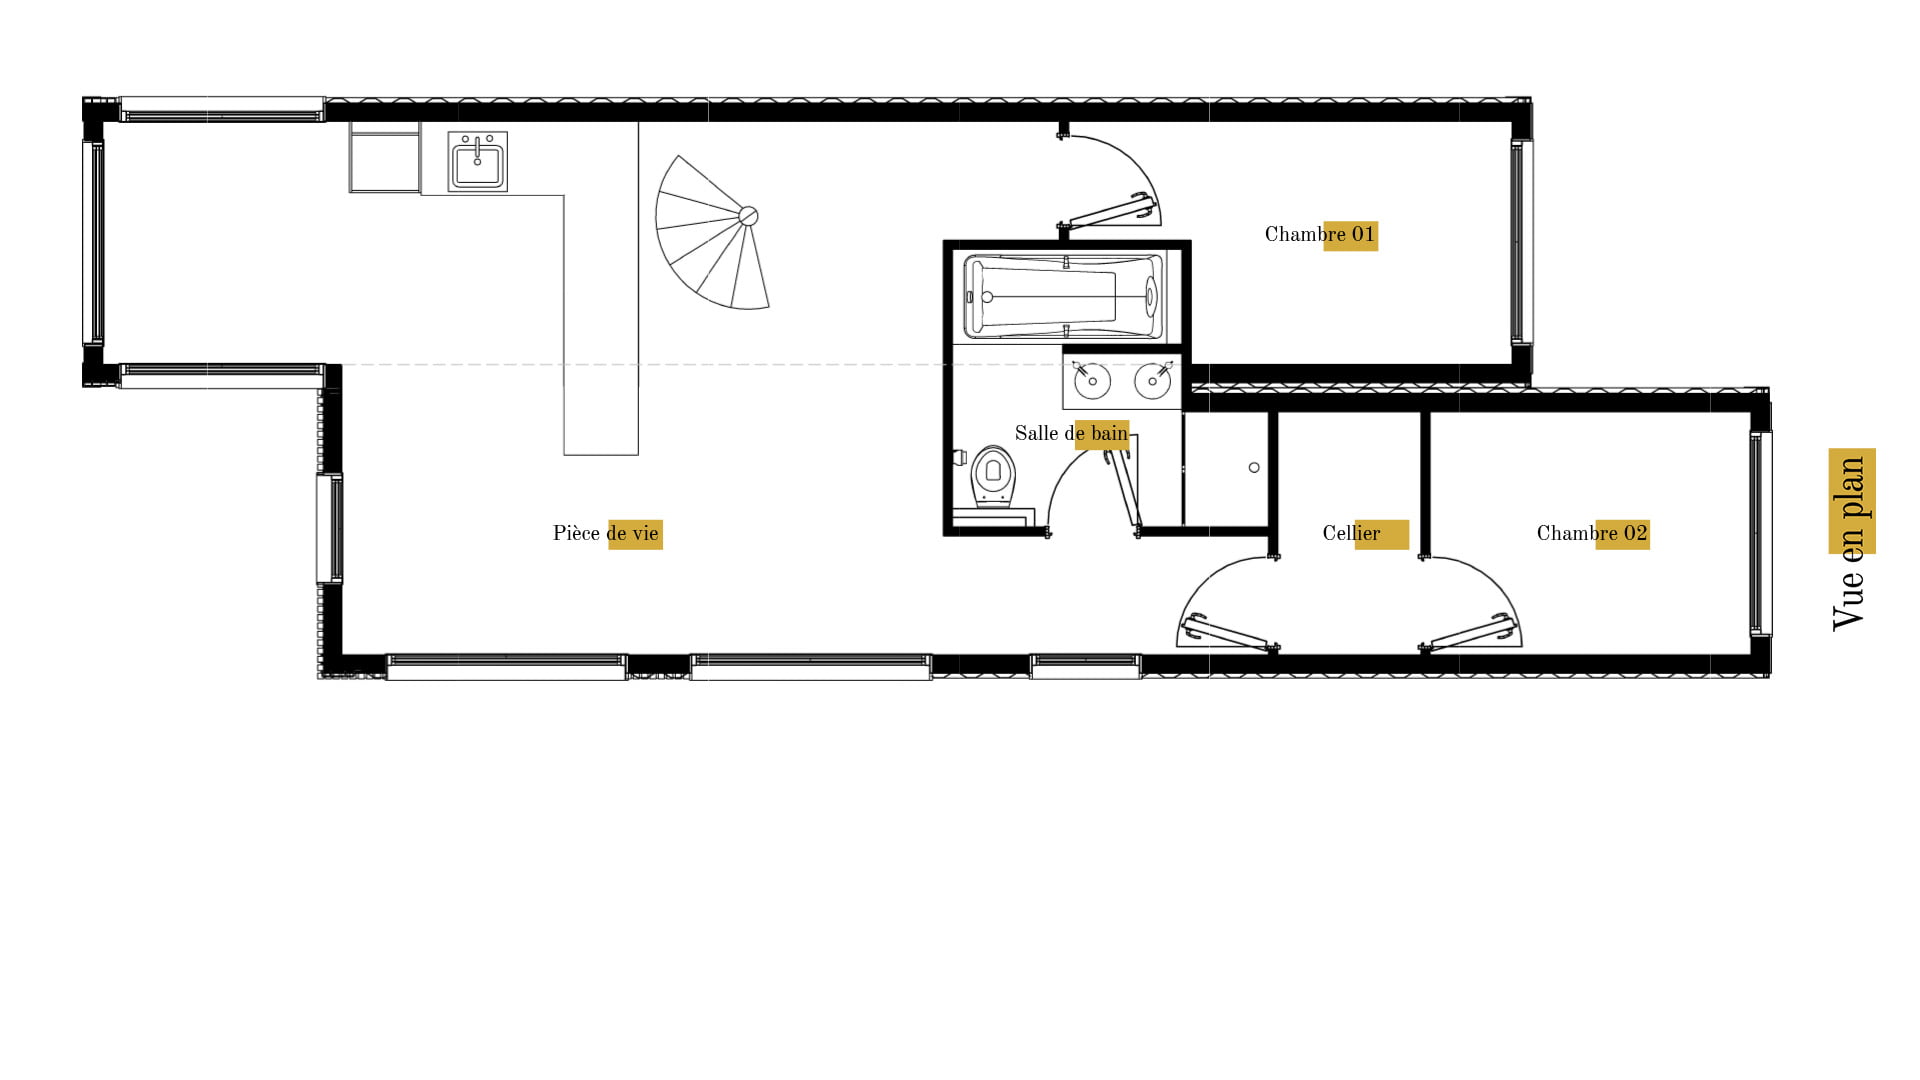 Plan gratuit à télécharger maison container maritime / 73m² / T4 / étage / suite parentale / toit terrasse - RDC. Collection Container, maison Vidal - Vue en Plan